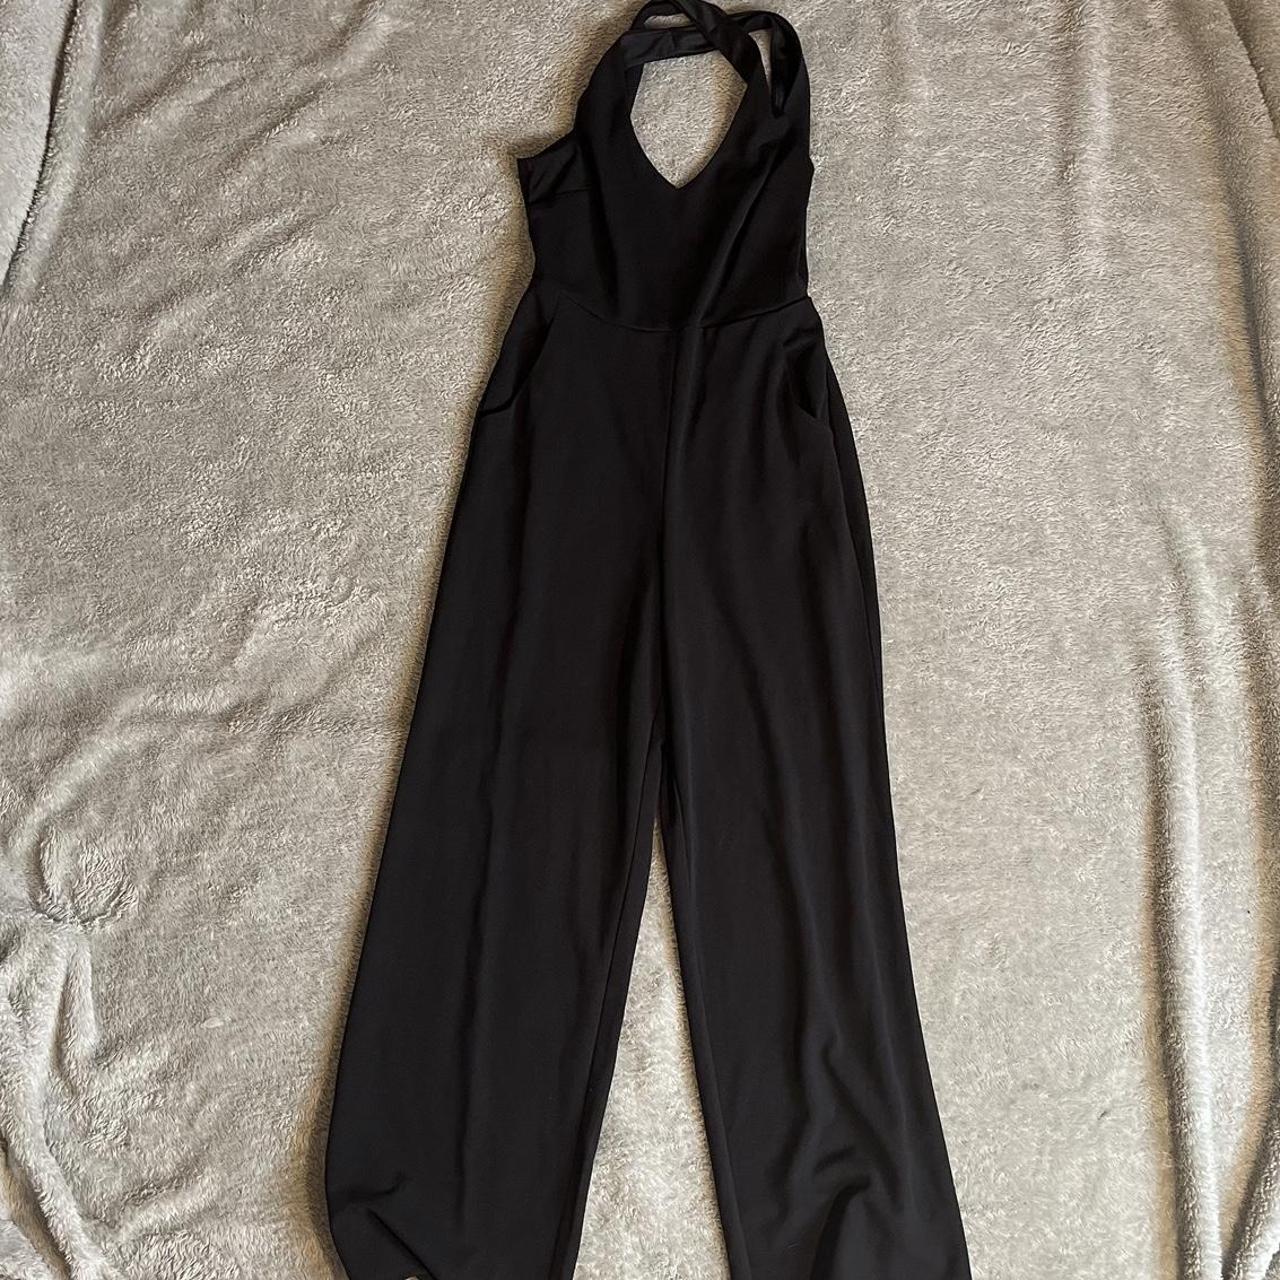 Black jumpsuit with zip up back Size M ⭐️US... - Depop